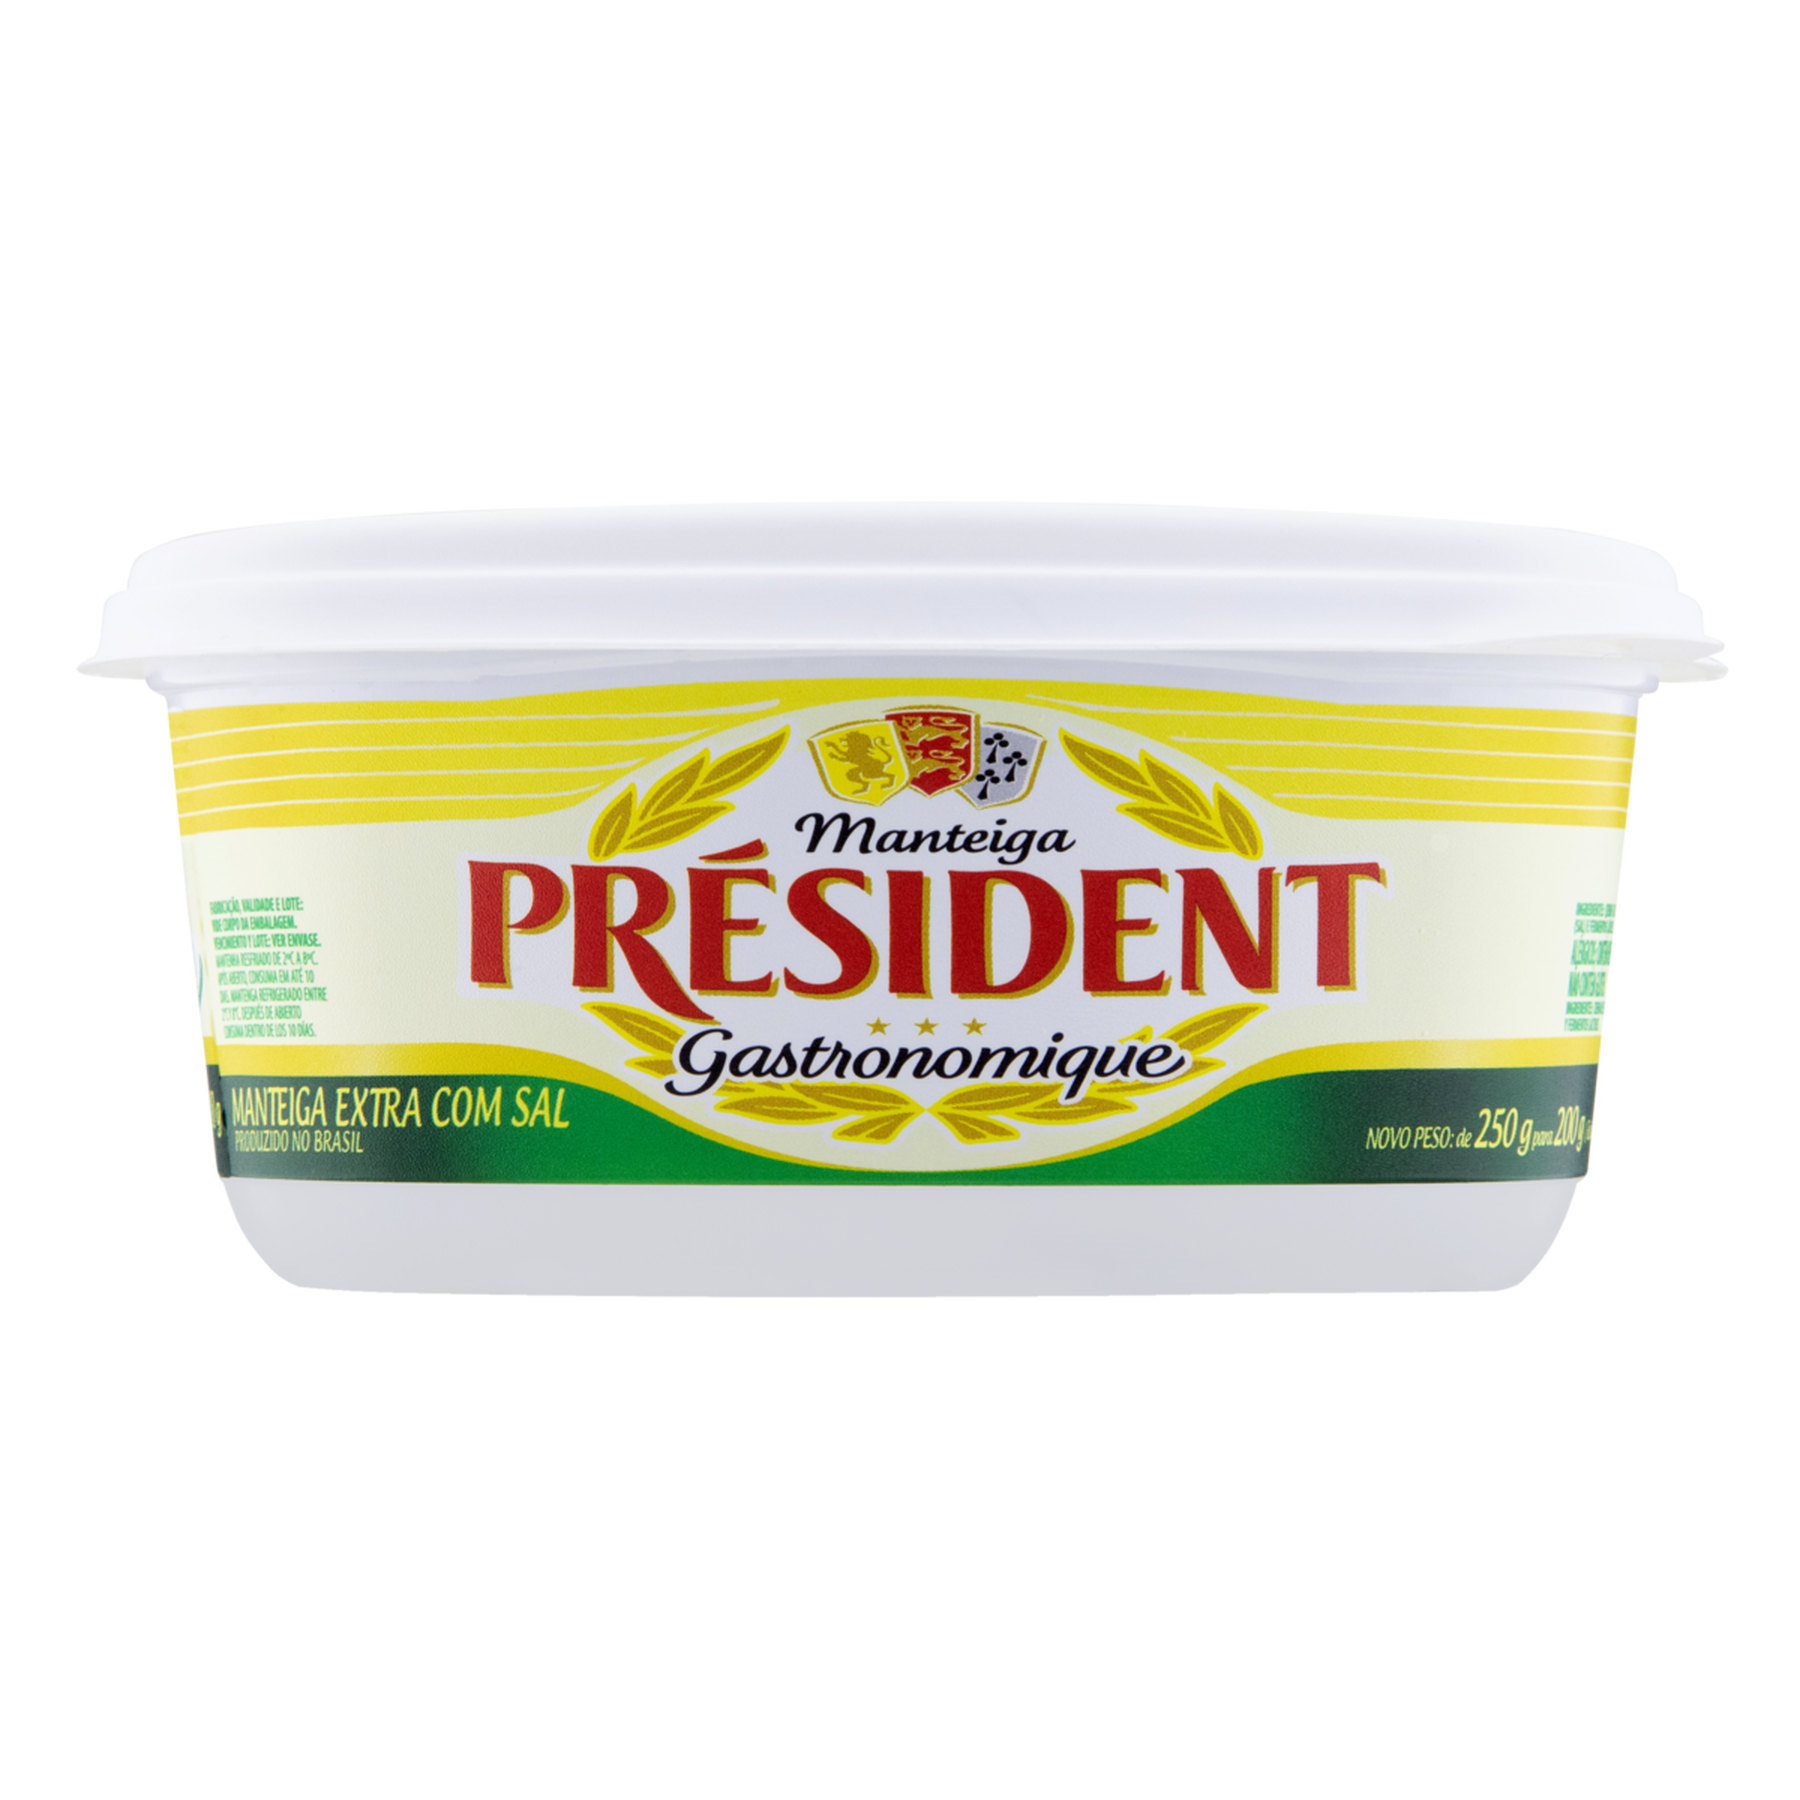 Manteiga Extra com Sal Président Gastronomique Pote 200g